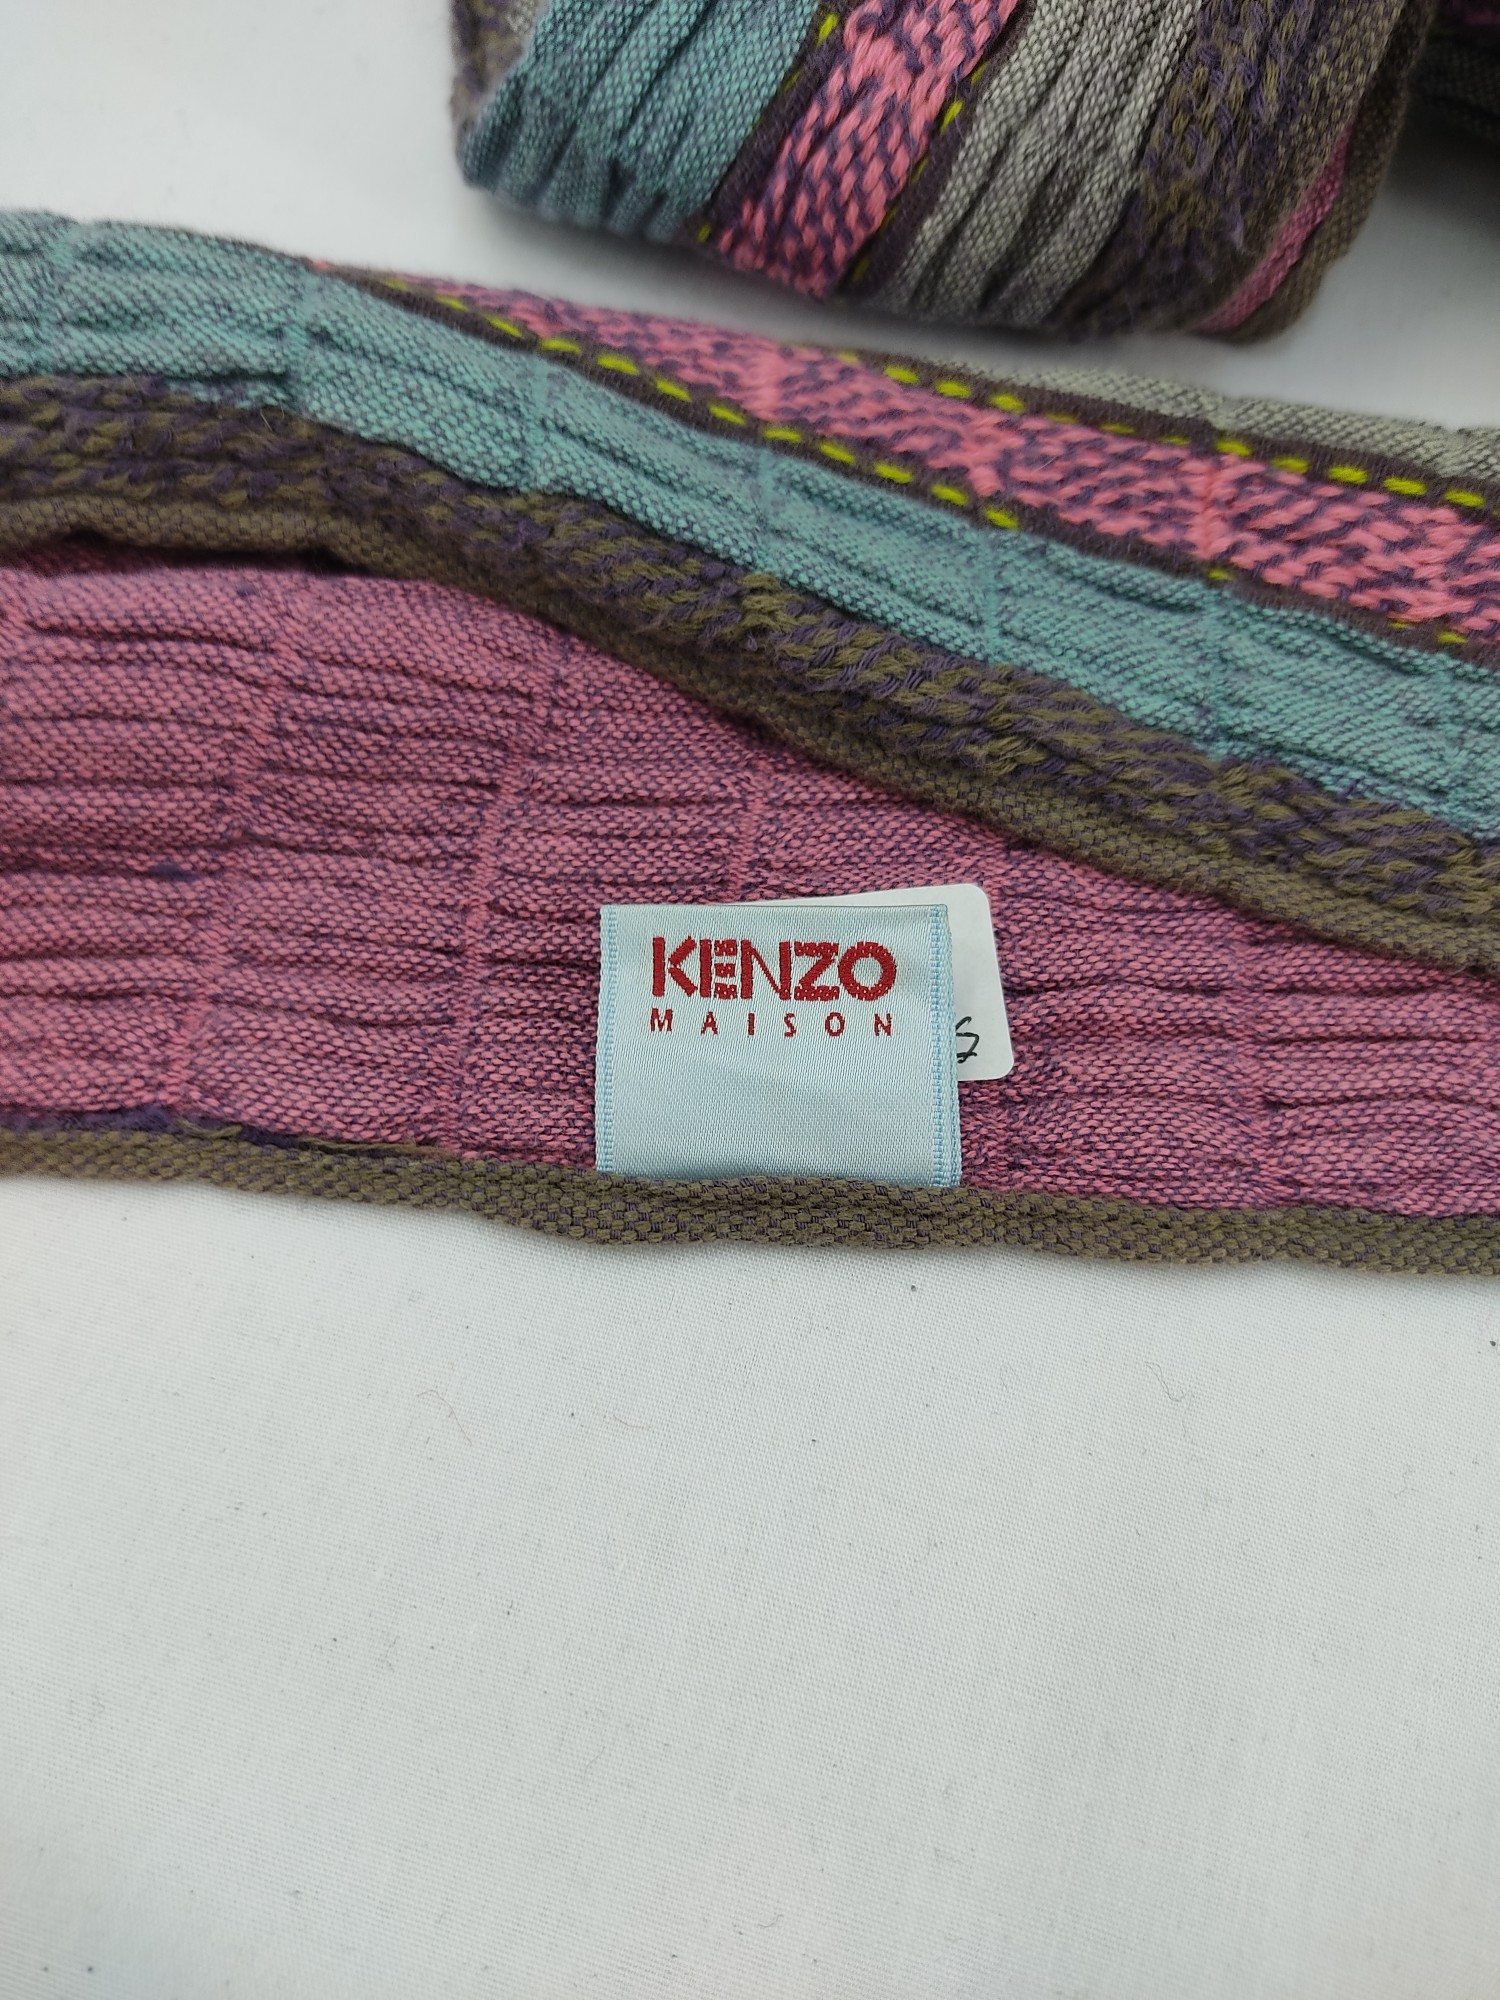 Kenzo Maison 2 Side Scarf / Muffler / Neck Wear - 4